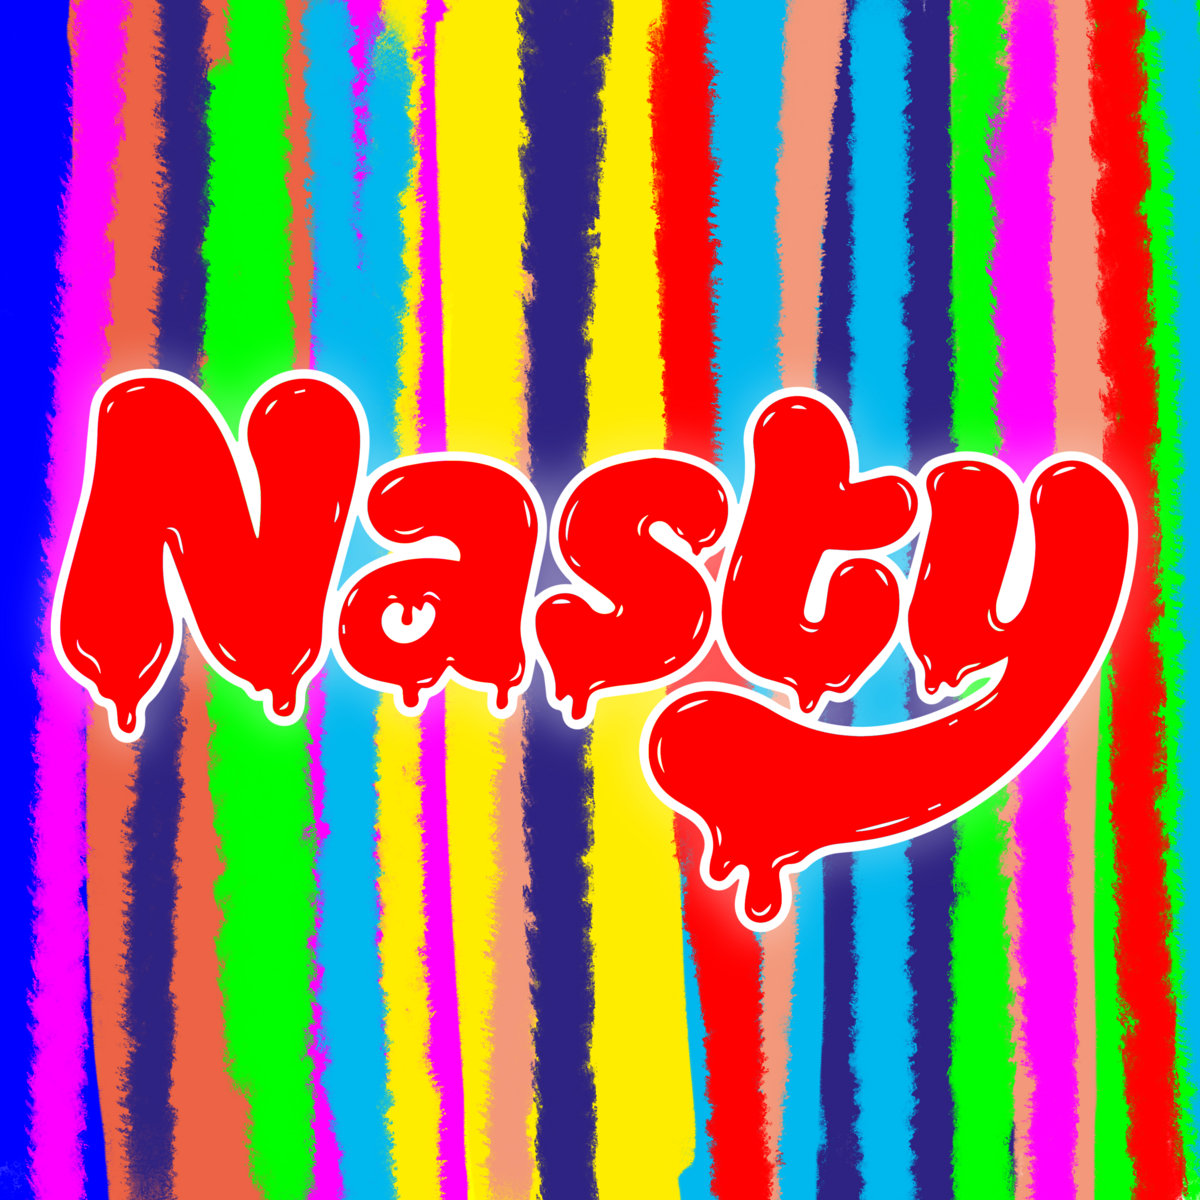 Too Nasty